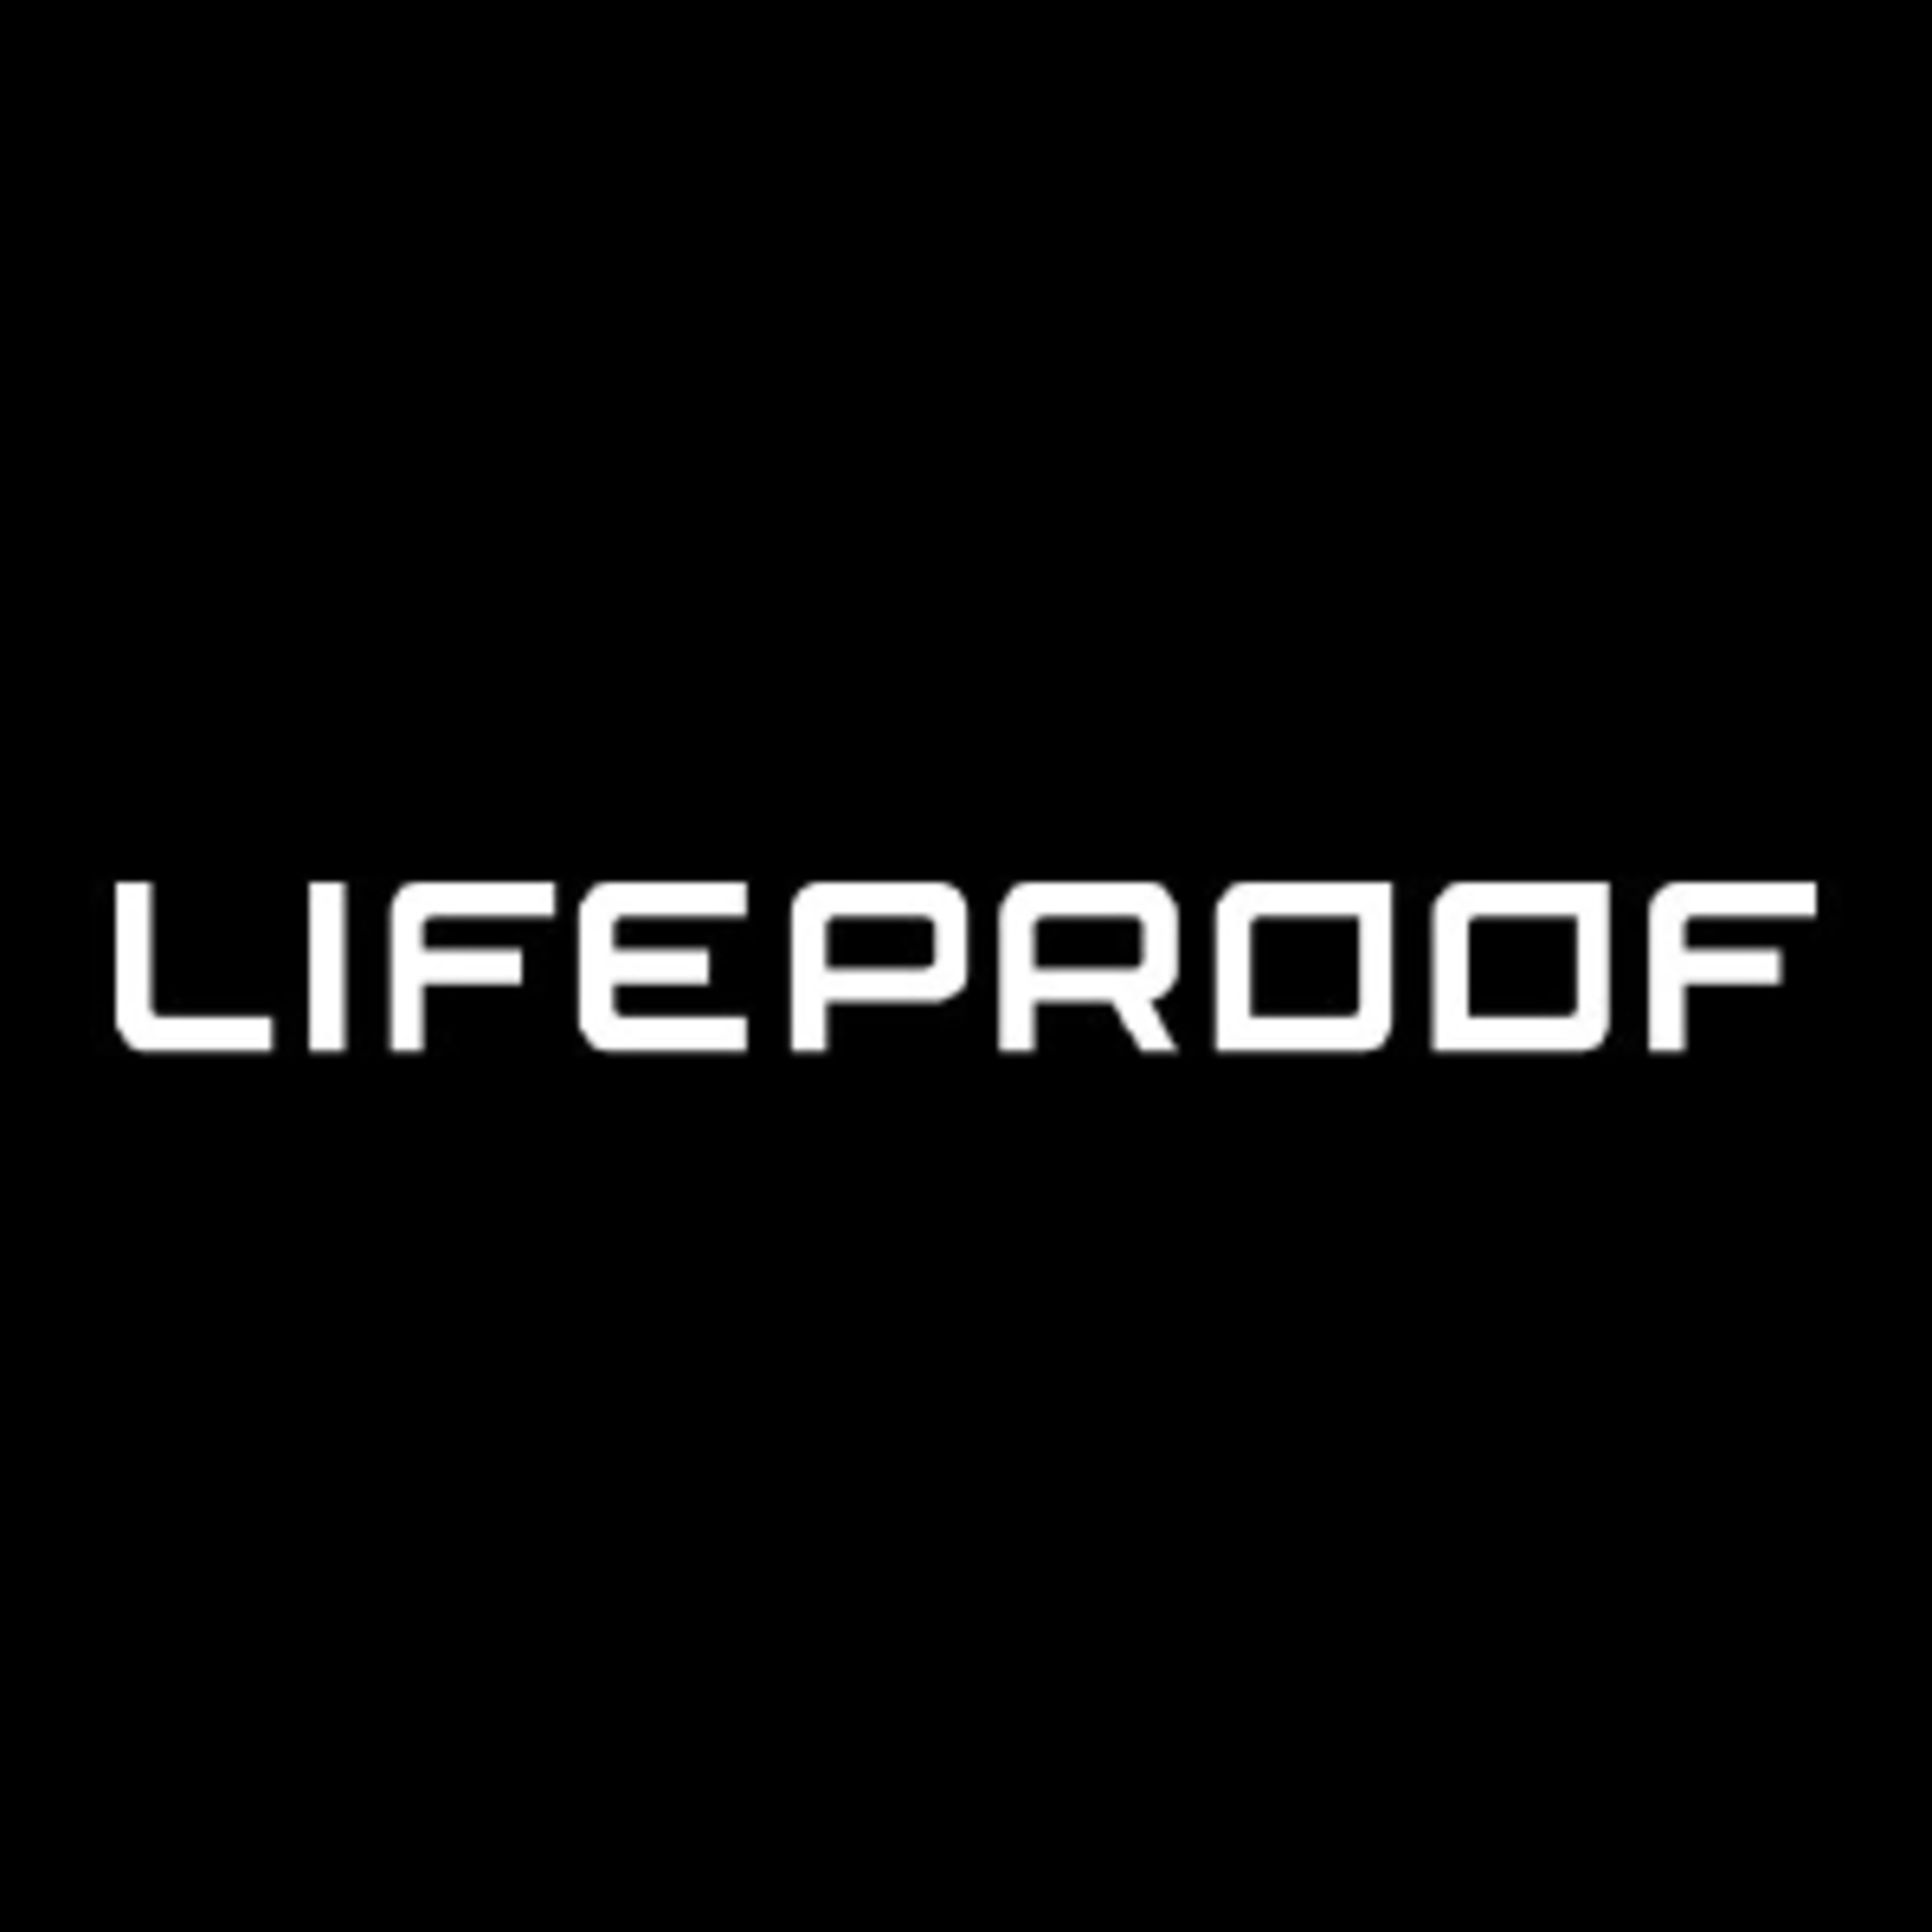 Lifeproof Code